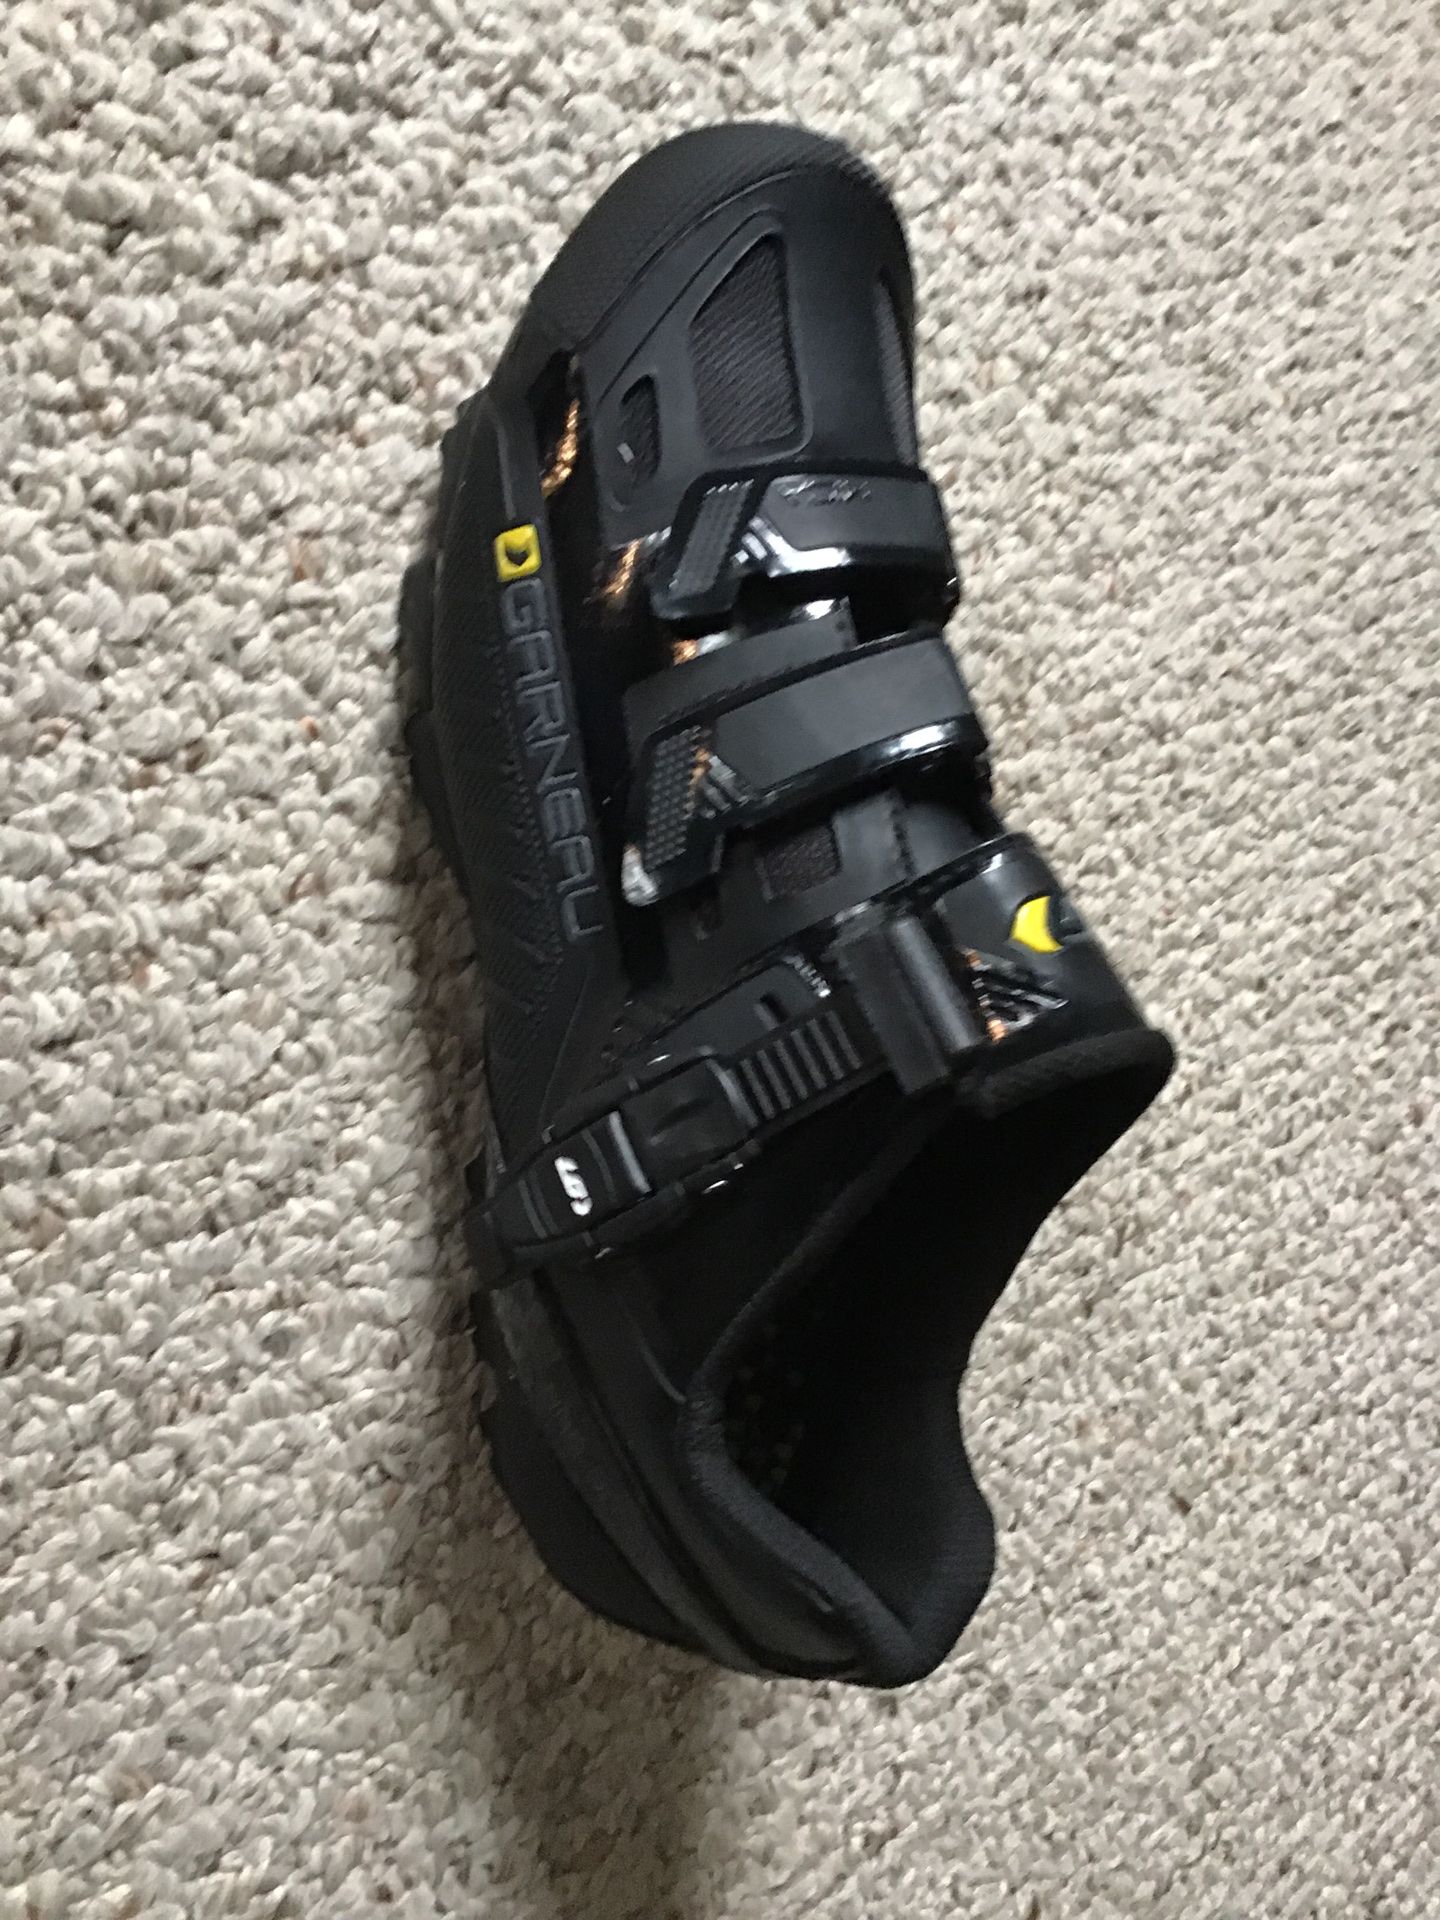 Garneau Cycling Shoes size 10 USA/ 41 EU